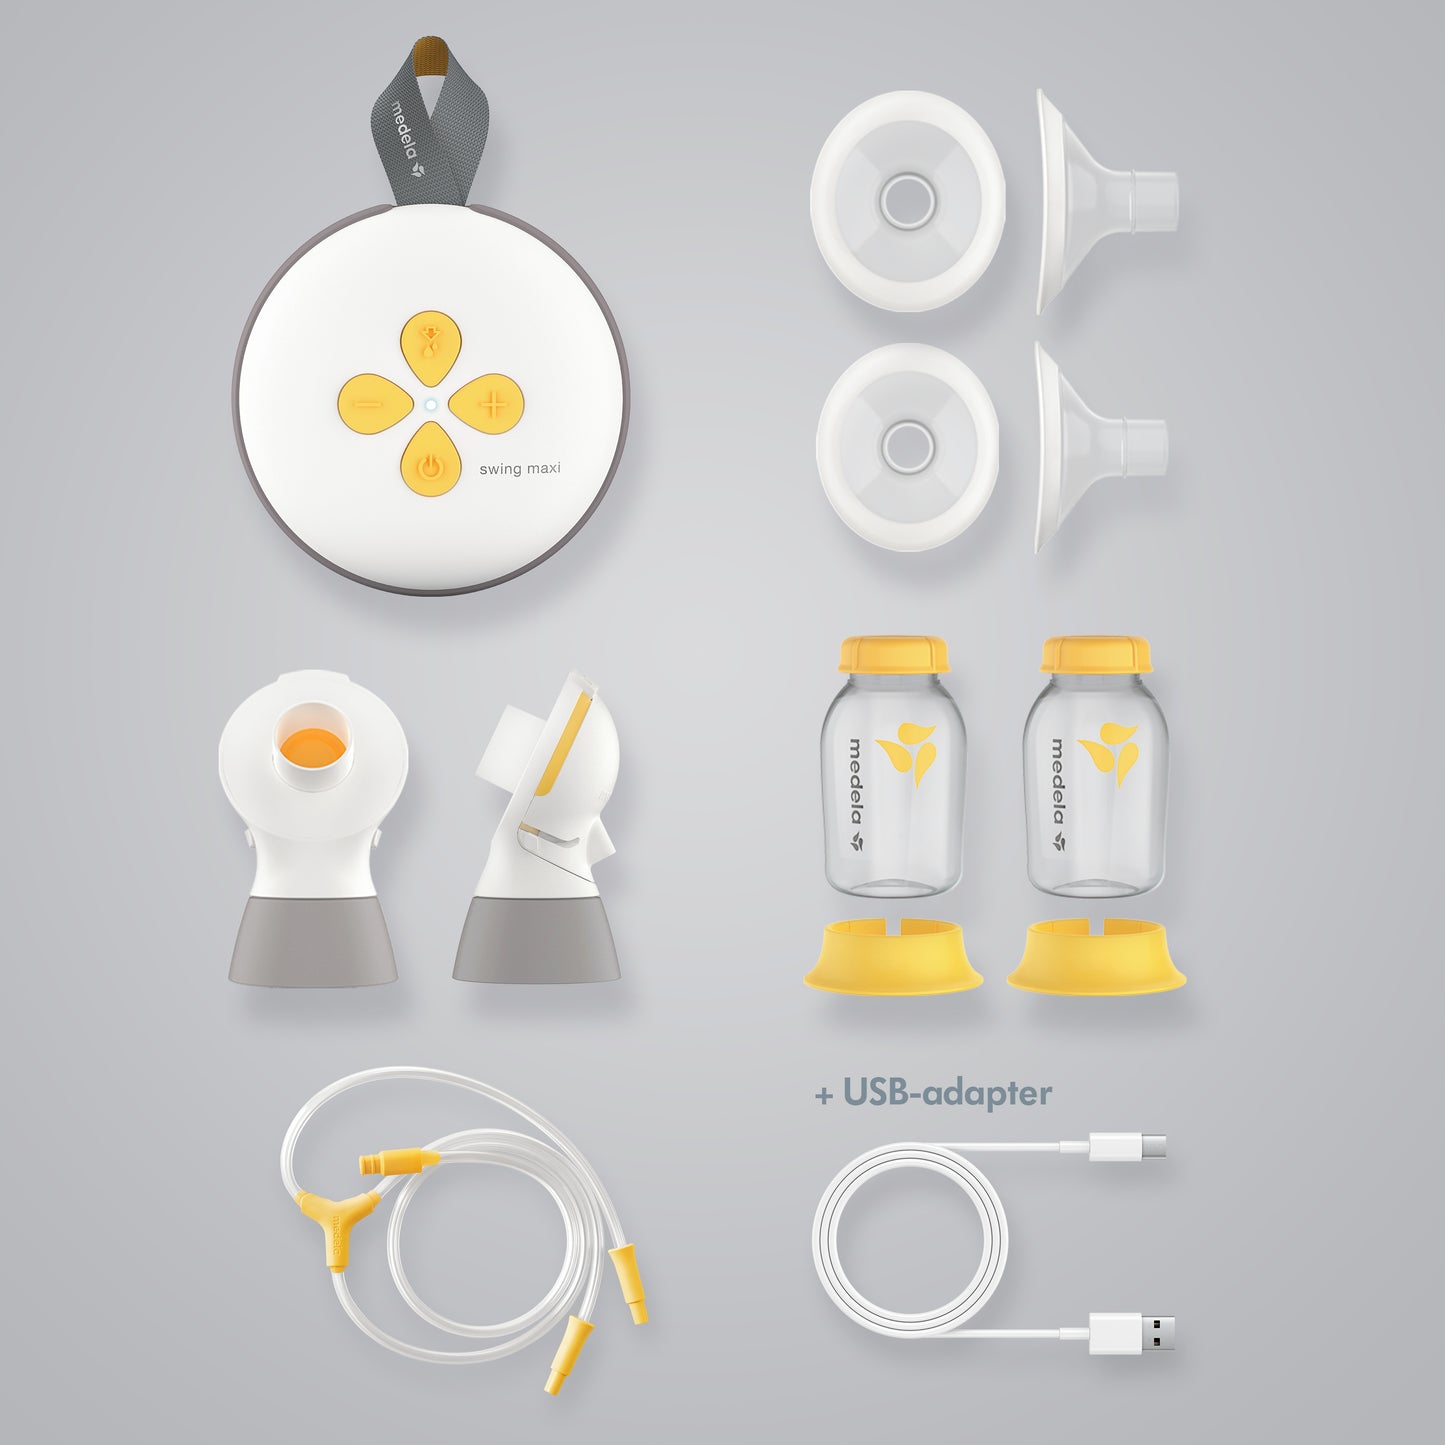 مضخة الثدي الكهربائية المزدوجة من ميديلا سوينغ ماكسي - إعادة تصميم مضخة الحليب الكهربائية المزدوجة